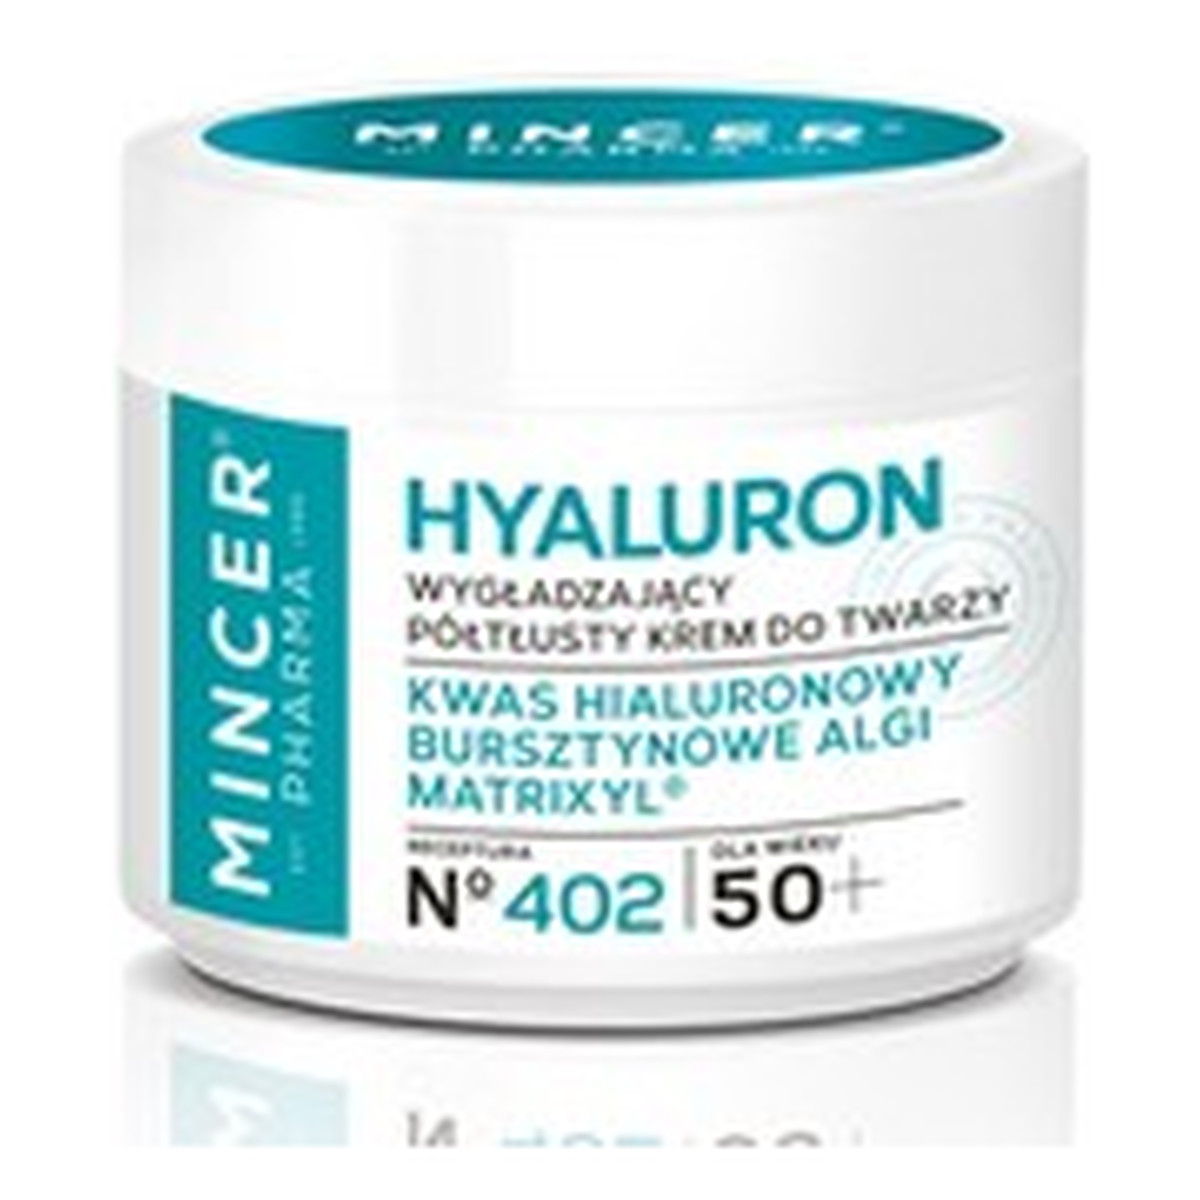 Mincer Pharma Hyaluron 50+ Wygładzający Krem Do Twarzy No402 50ml